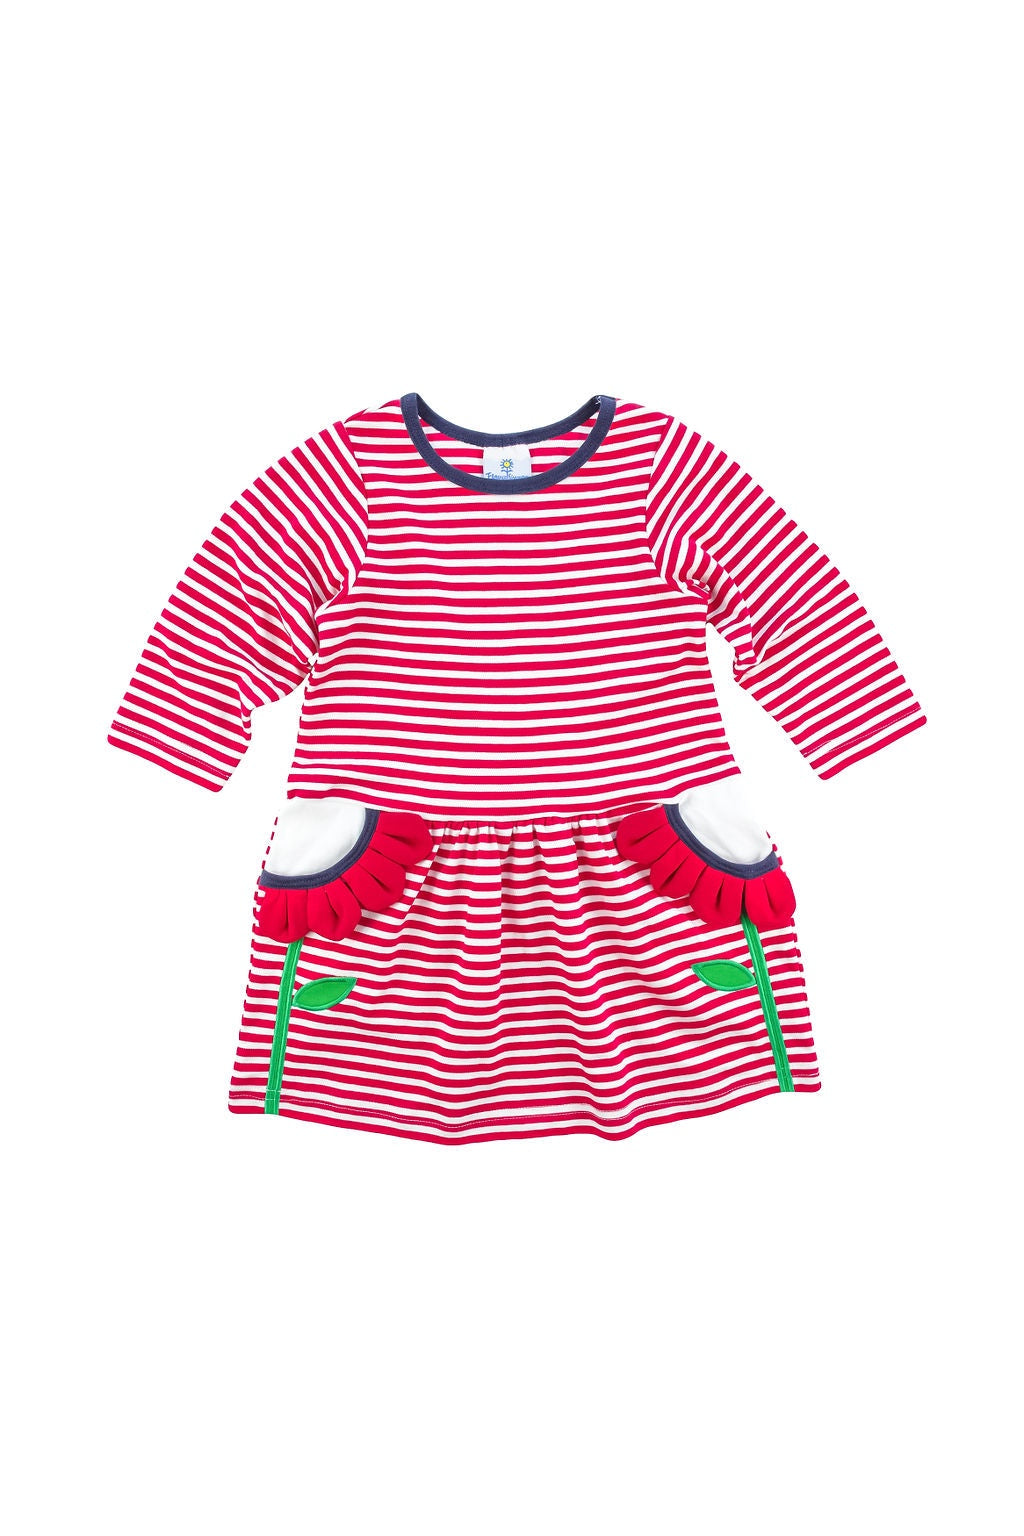 Florence Eiseman Pink/White Stripe Knit dress W/Flower Petal Pockets H5057 5009